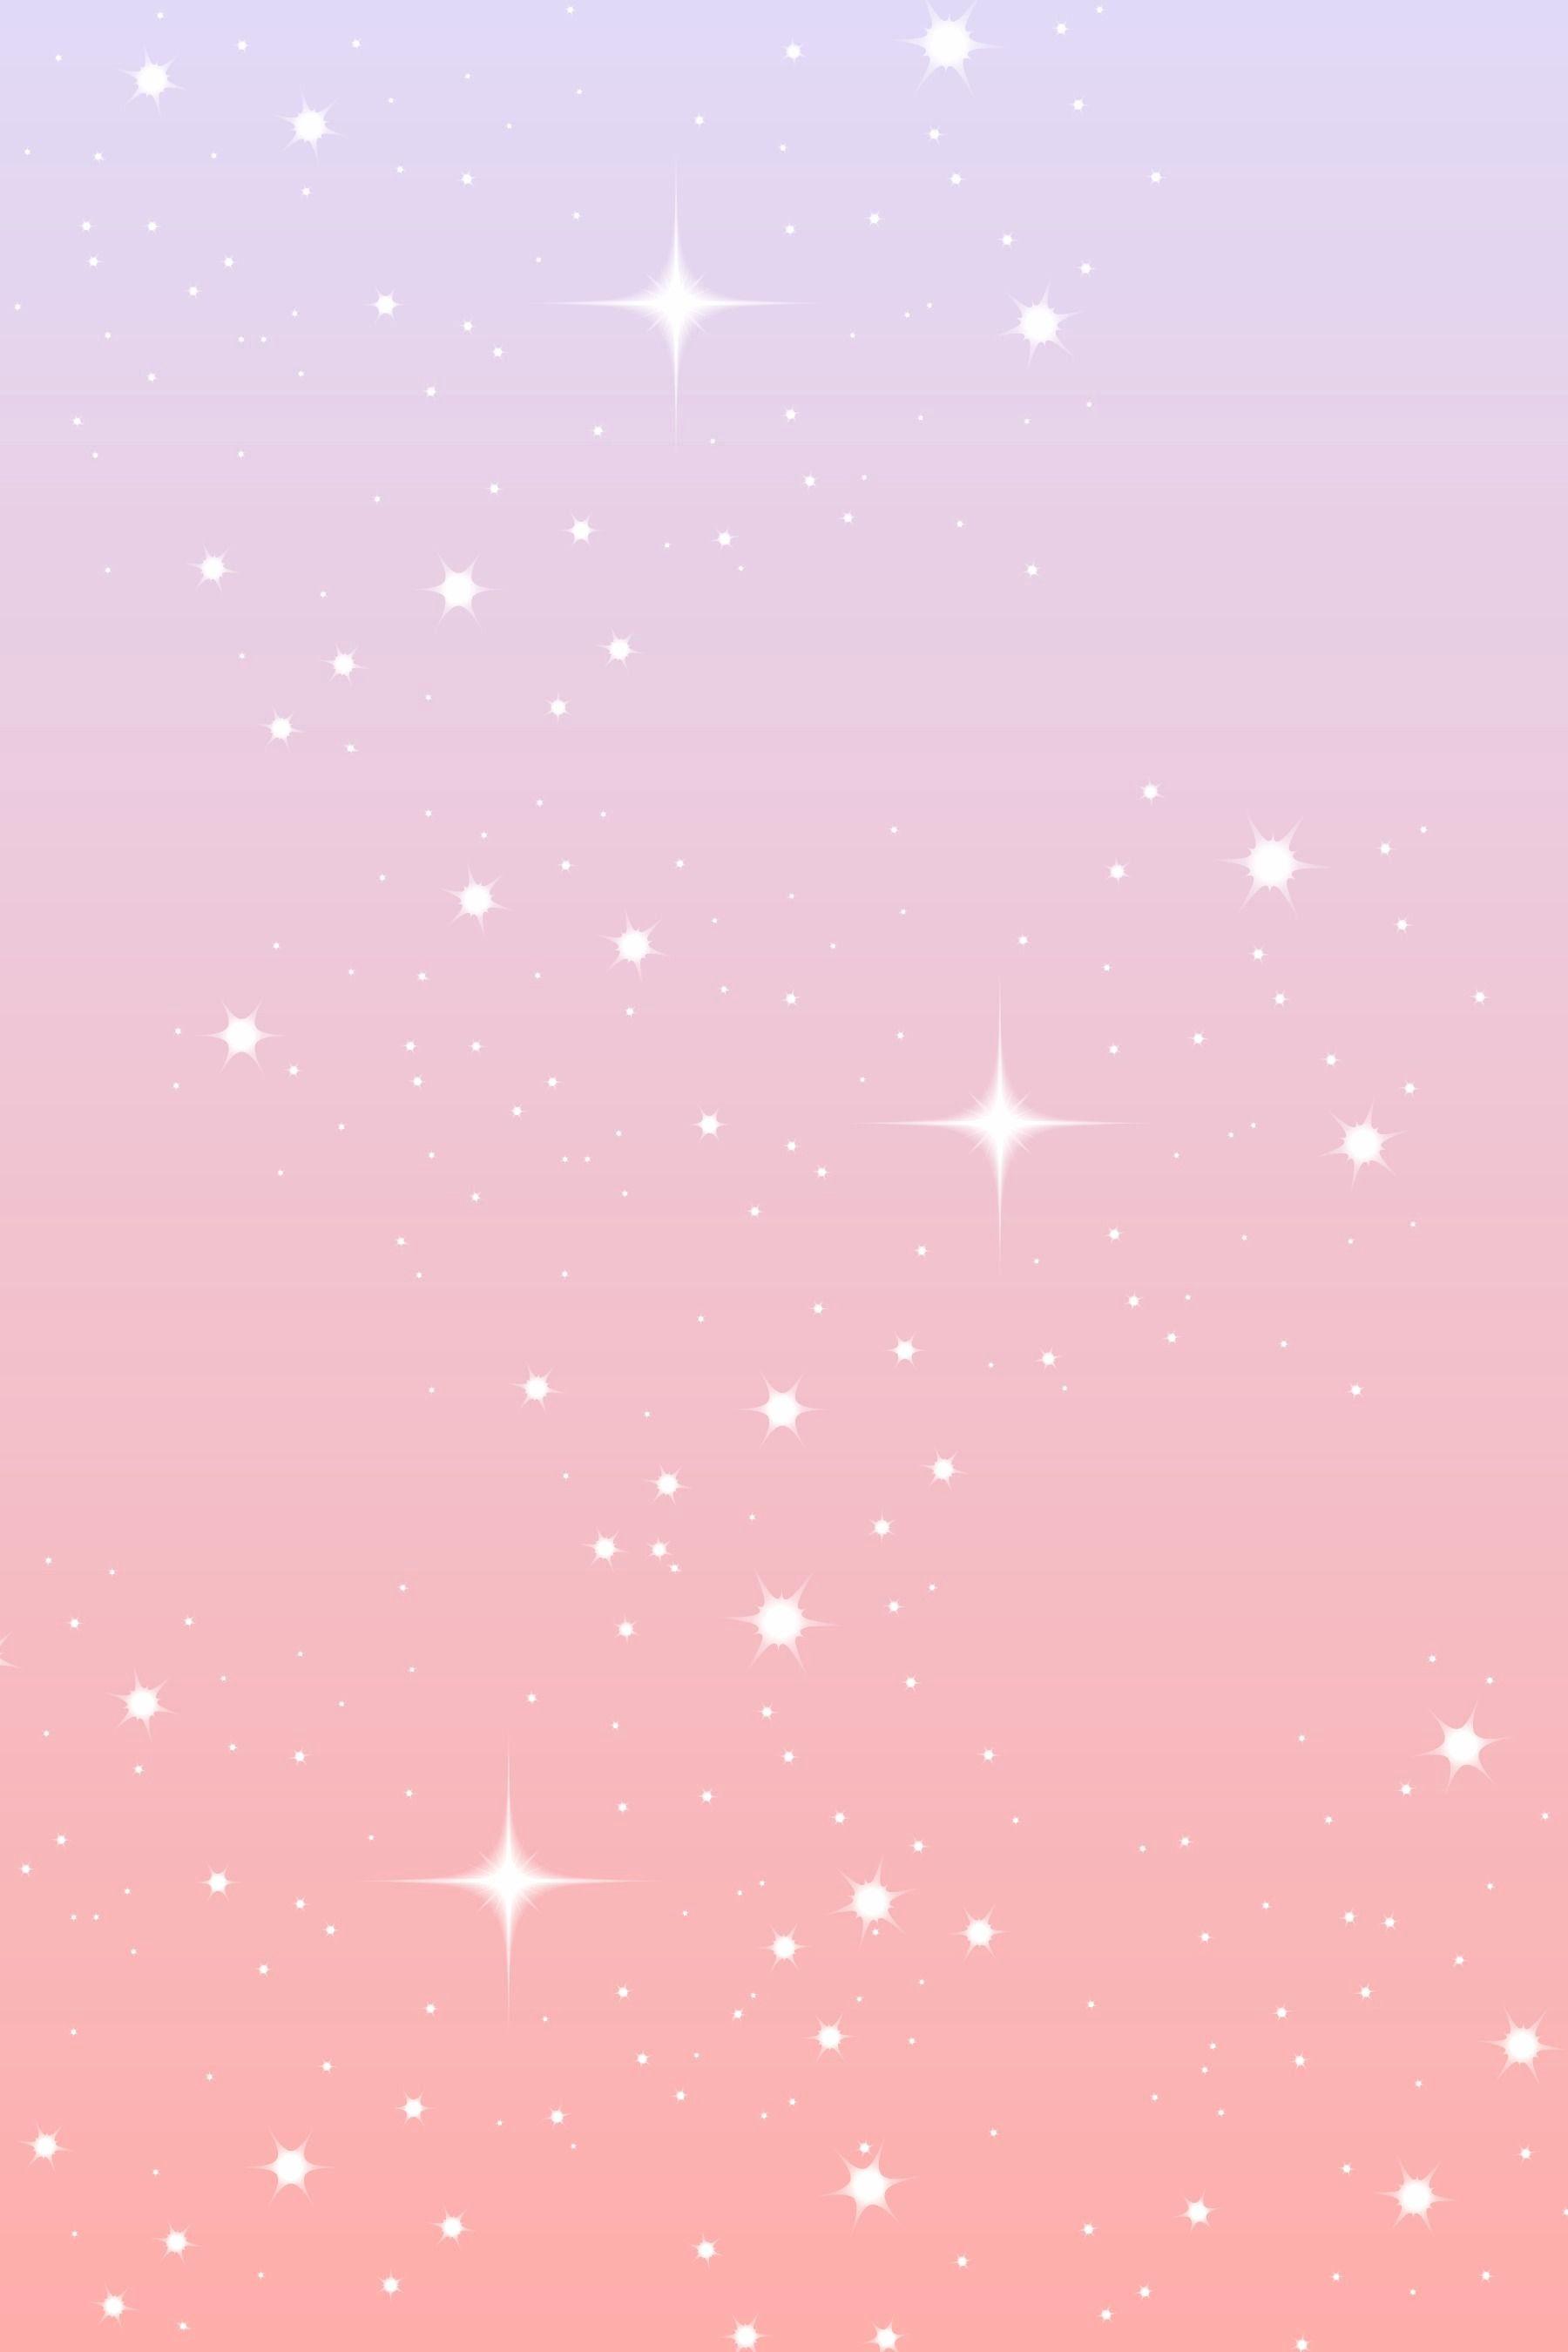 Light Pink Glitter Wallpapers - Top Free Light Pink Glitter Backgrounds ...